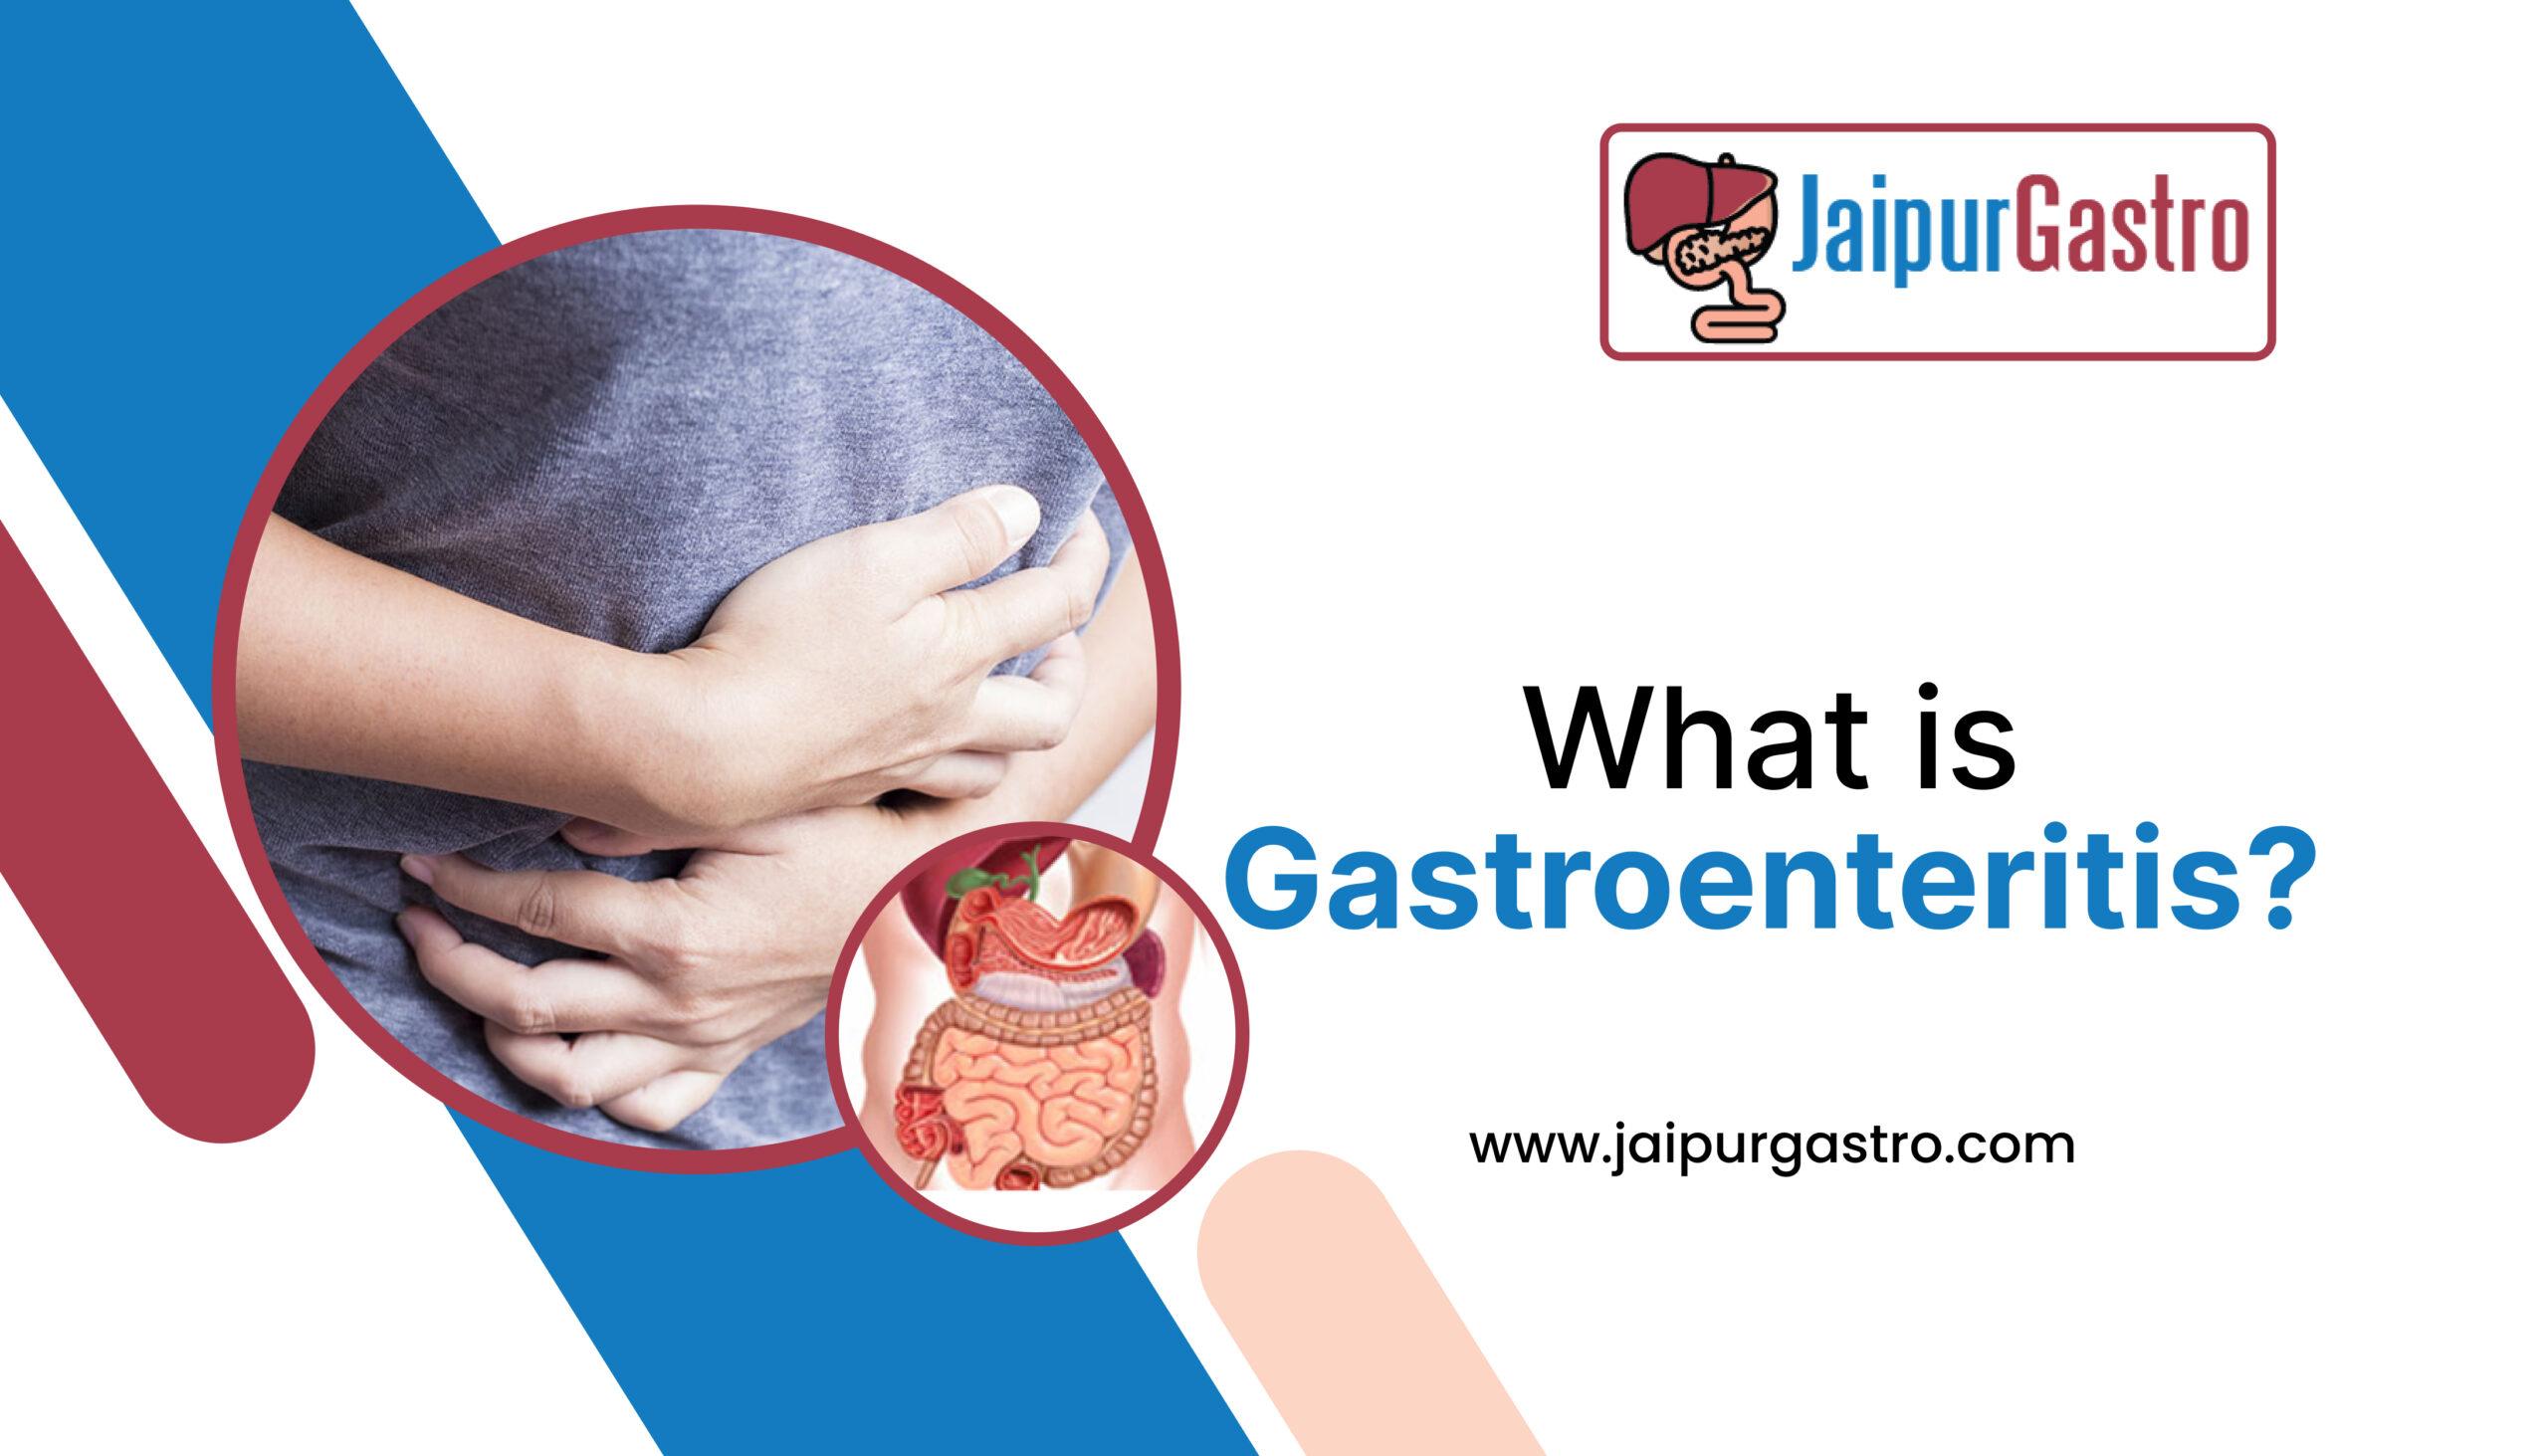 What is gastroenteritis